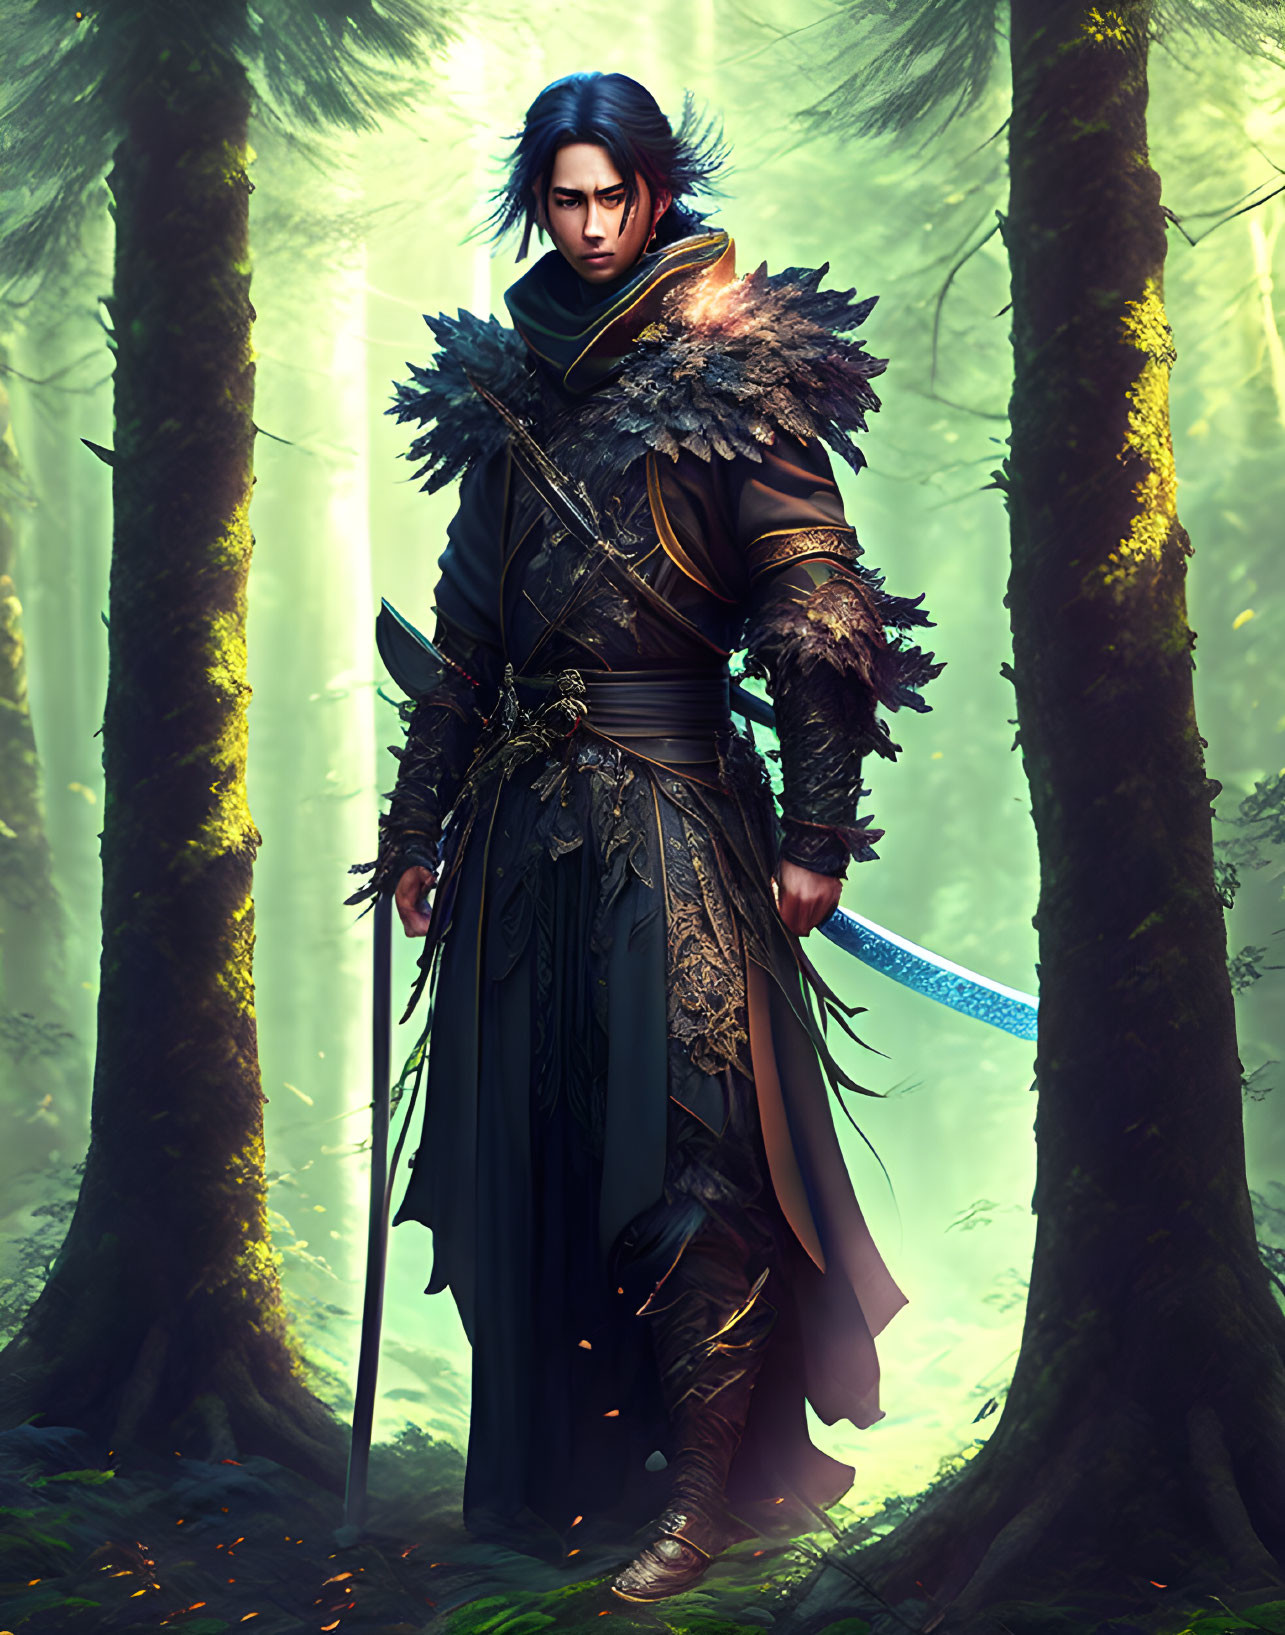 Male figure in ornate armor wields sword in sunlit forest